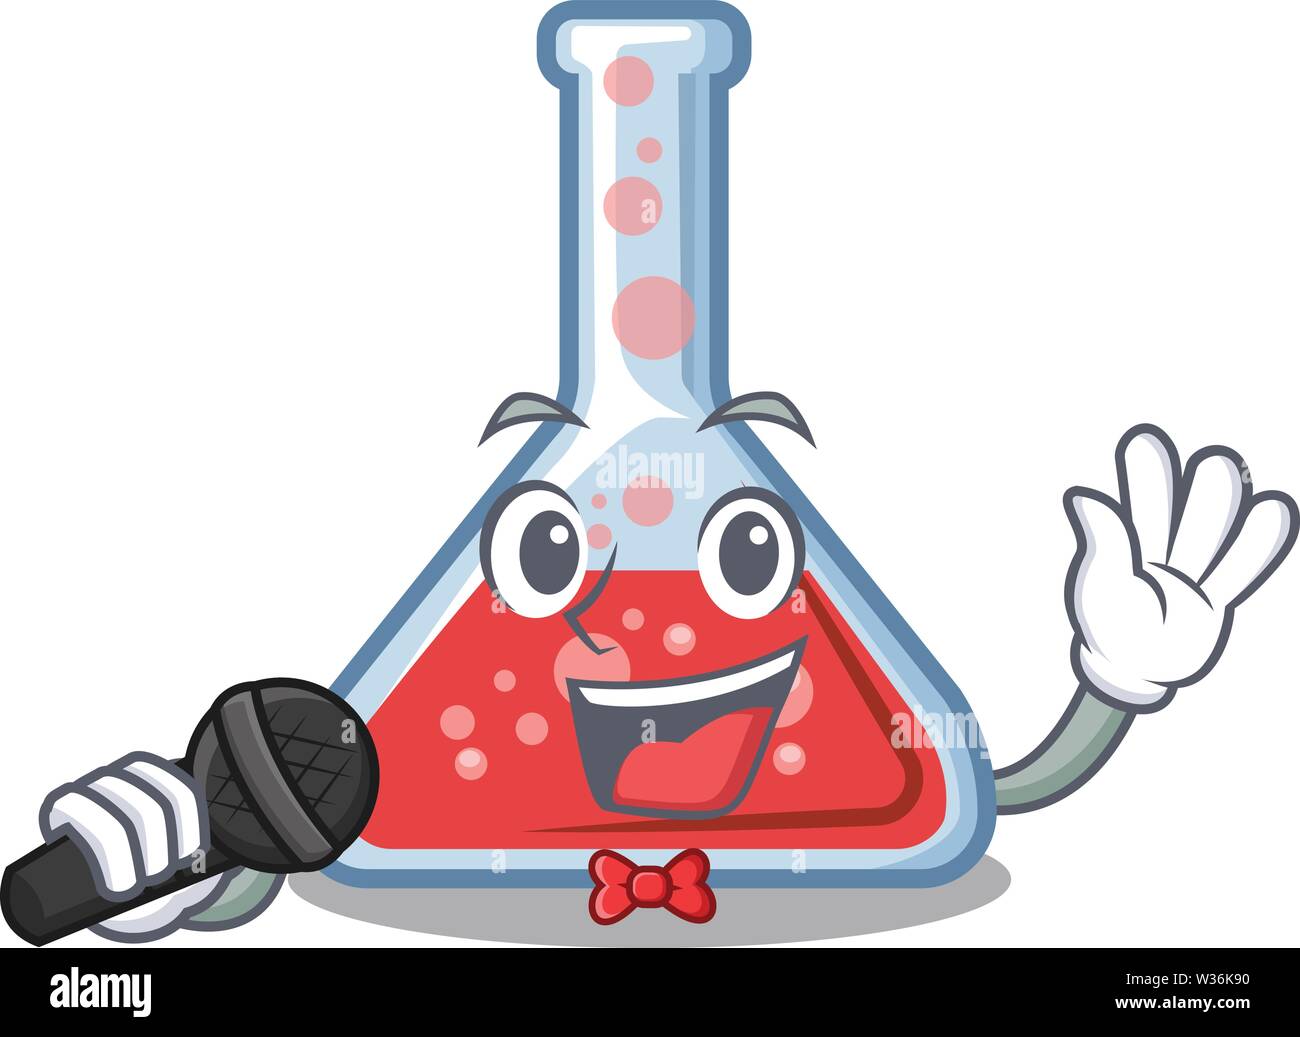 Matraz De Erlenmeyer Experimento Químico Suministros De Laboratorio  Suministros Químicos De Dibujos Animados PNG  Ilustración Del Vaso  Experimento Químico Matraz De Erlenmeyer PNG y Vector para Descargar  Gratis  Pngtree